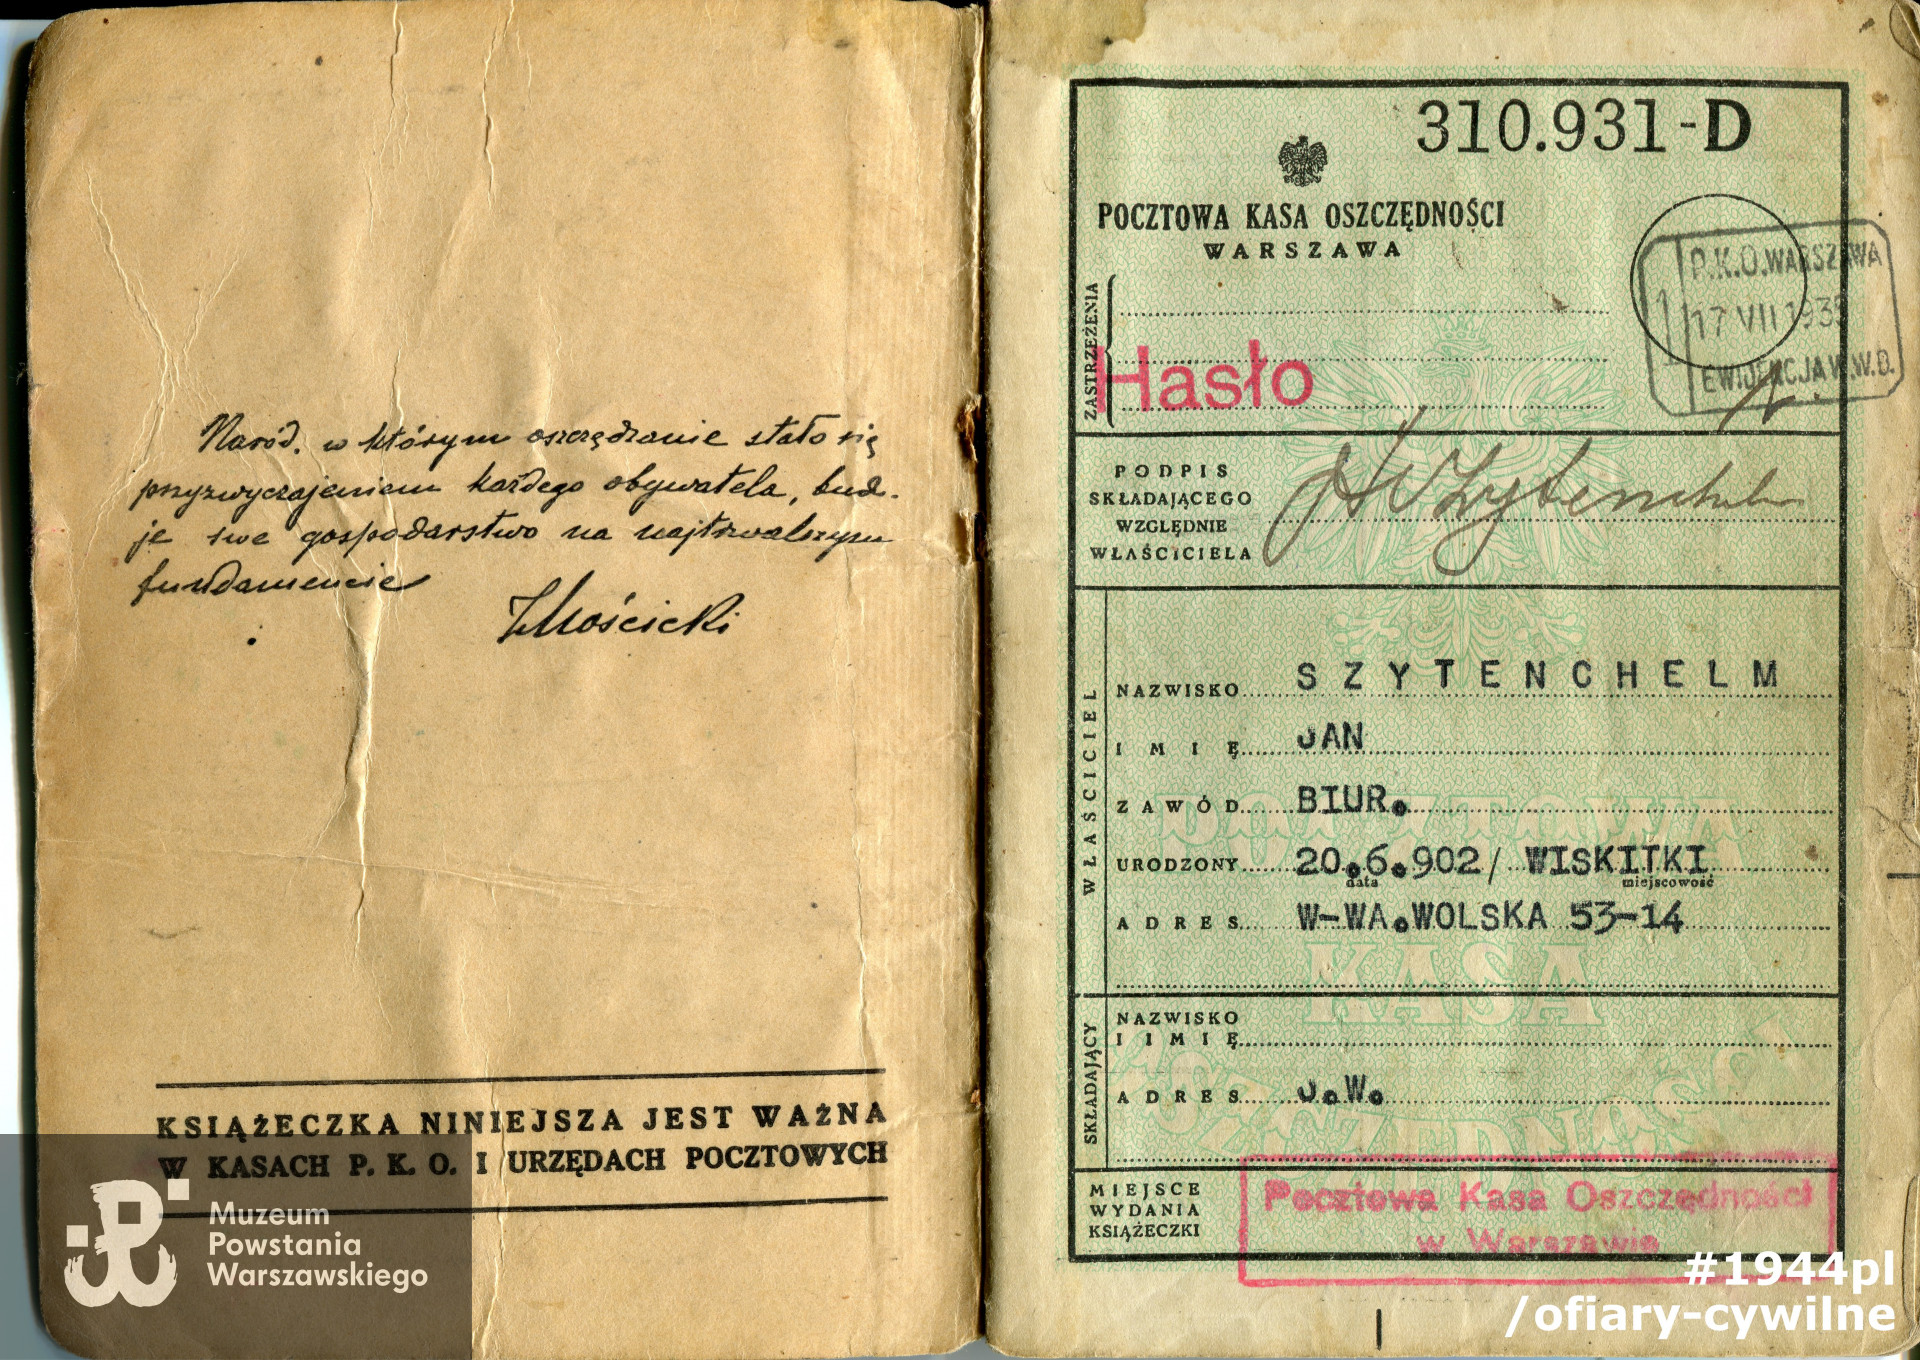 Książeczka oszczędnościowa PKO należąca do Jana Szytenchelma, zbiory Muzeum Powstania Warszawskiego nr akcesji P/8690